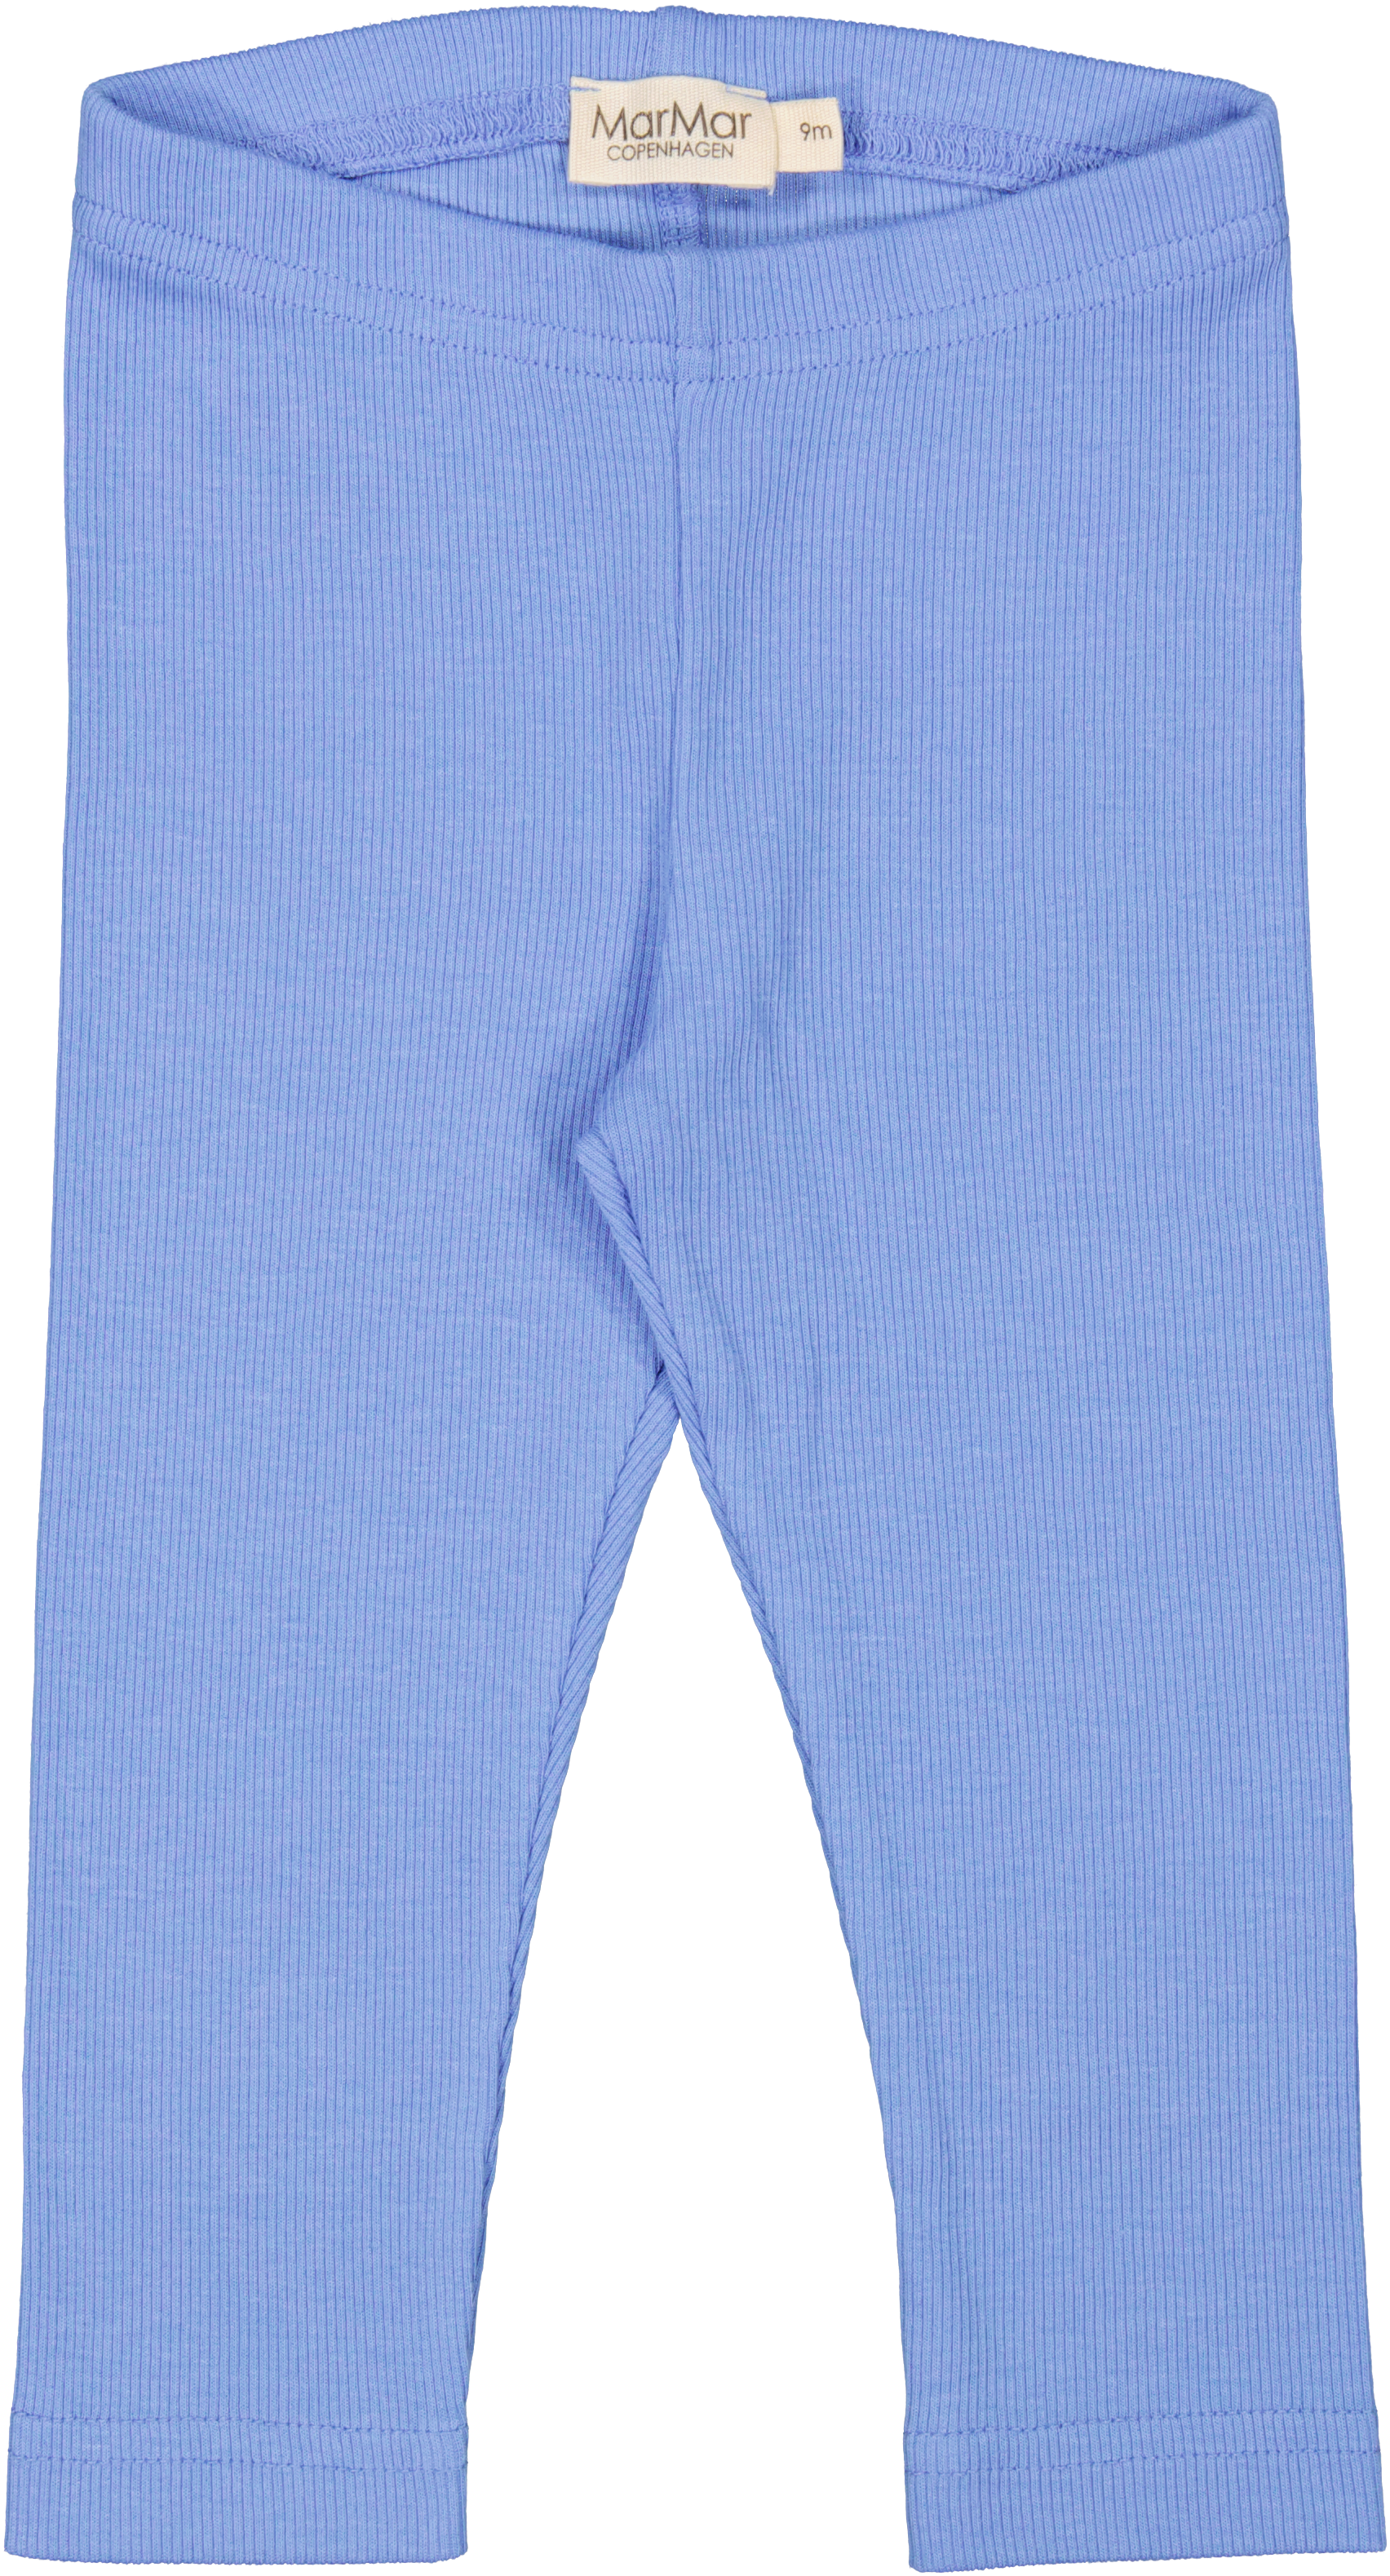 Billede af MarMar Leg Modal Pants - Cornflower - 56 cm / 2 mdr.